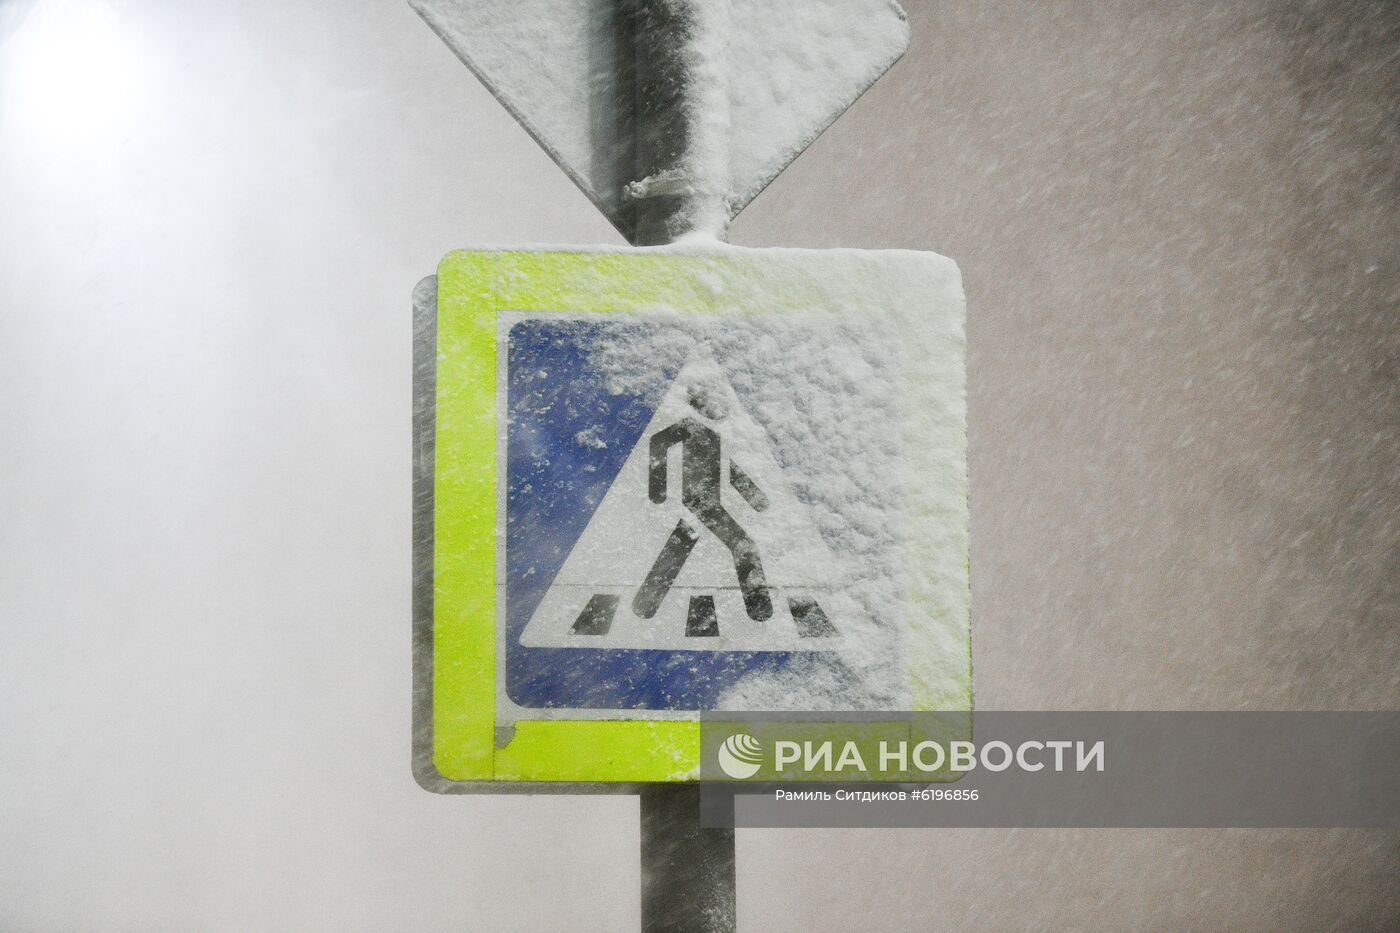 Снег в Москве и Подмосковье